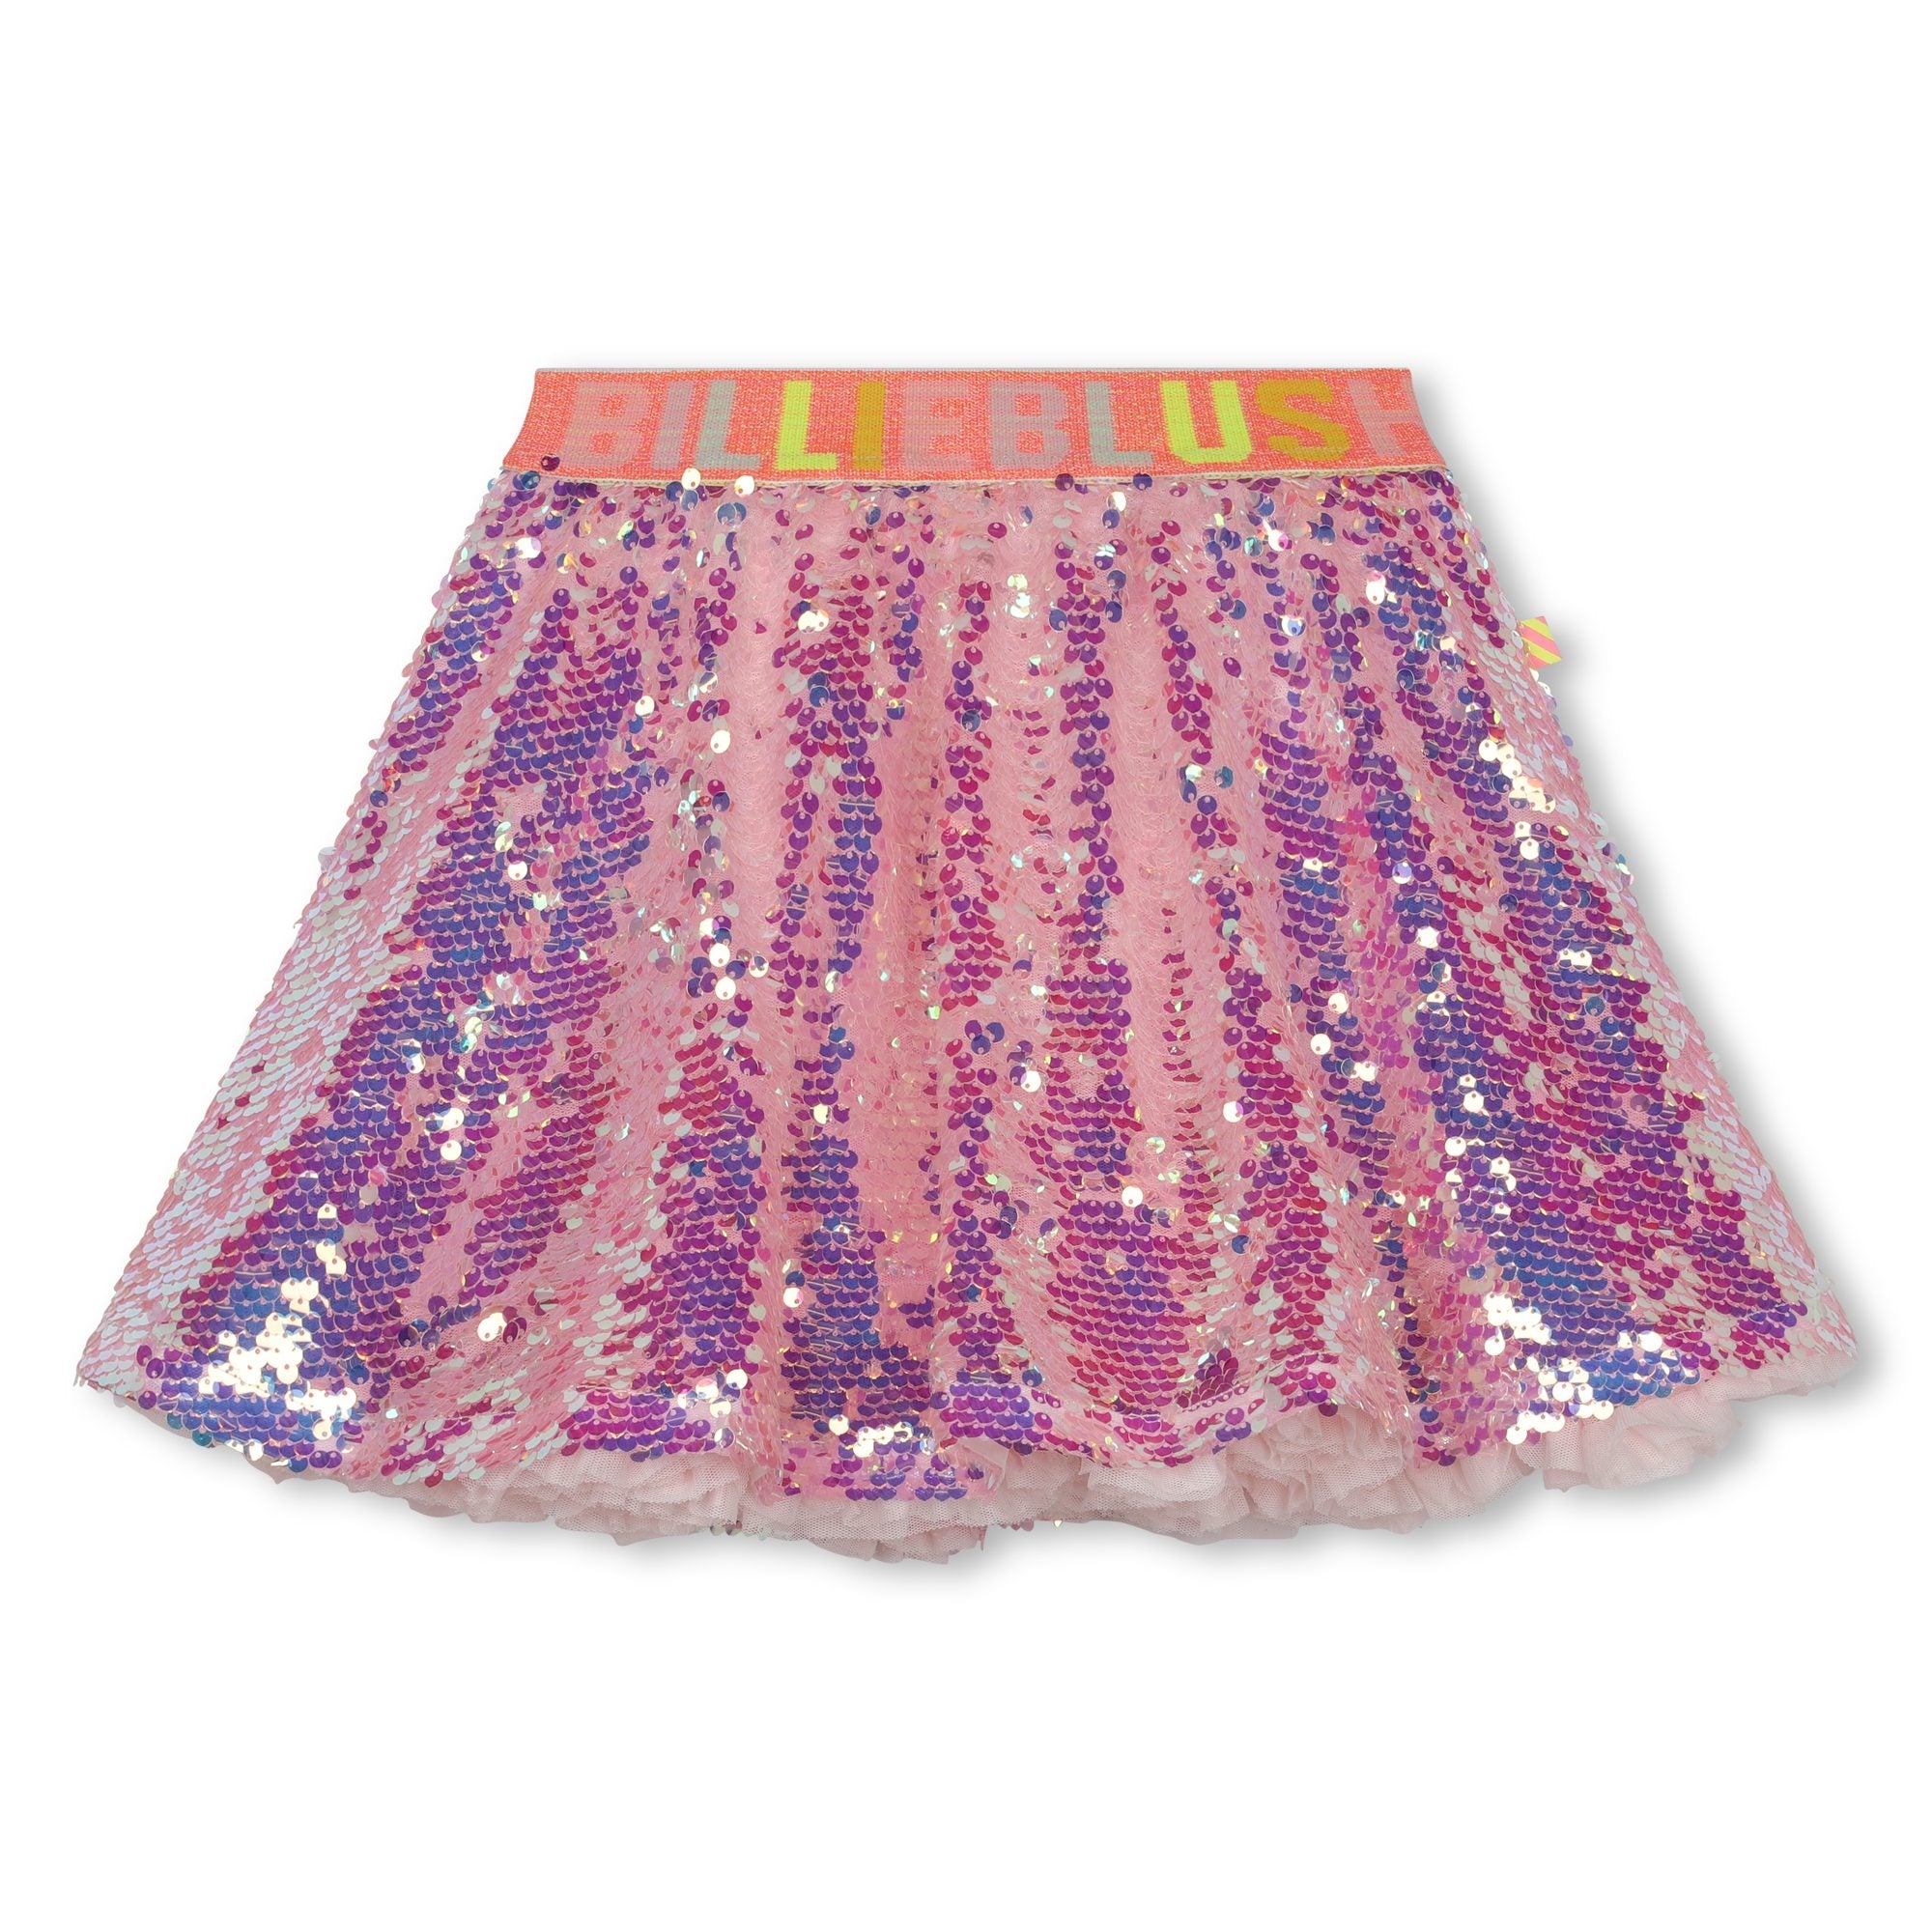 Girls Pink Sequin Skirt